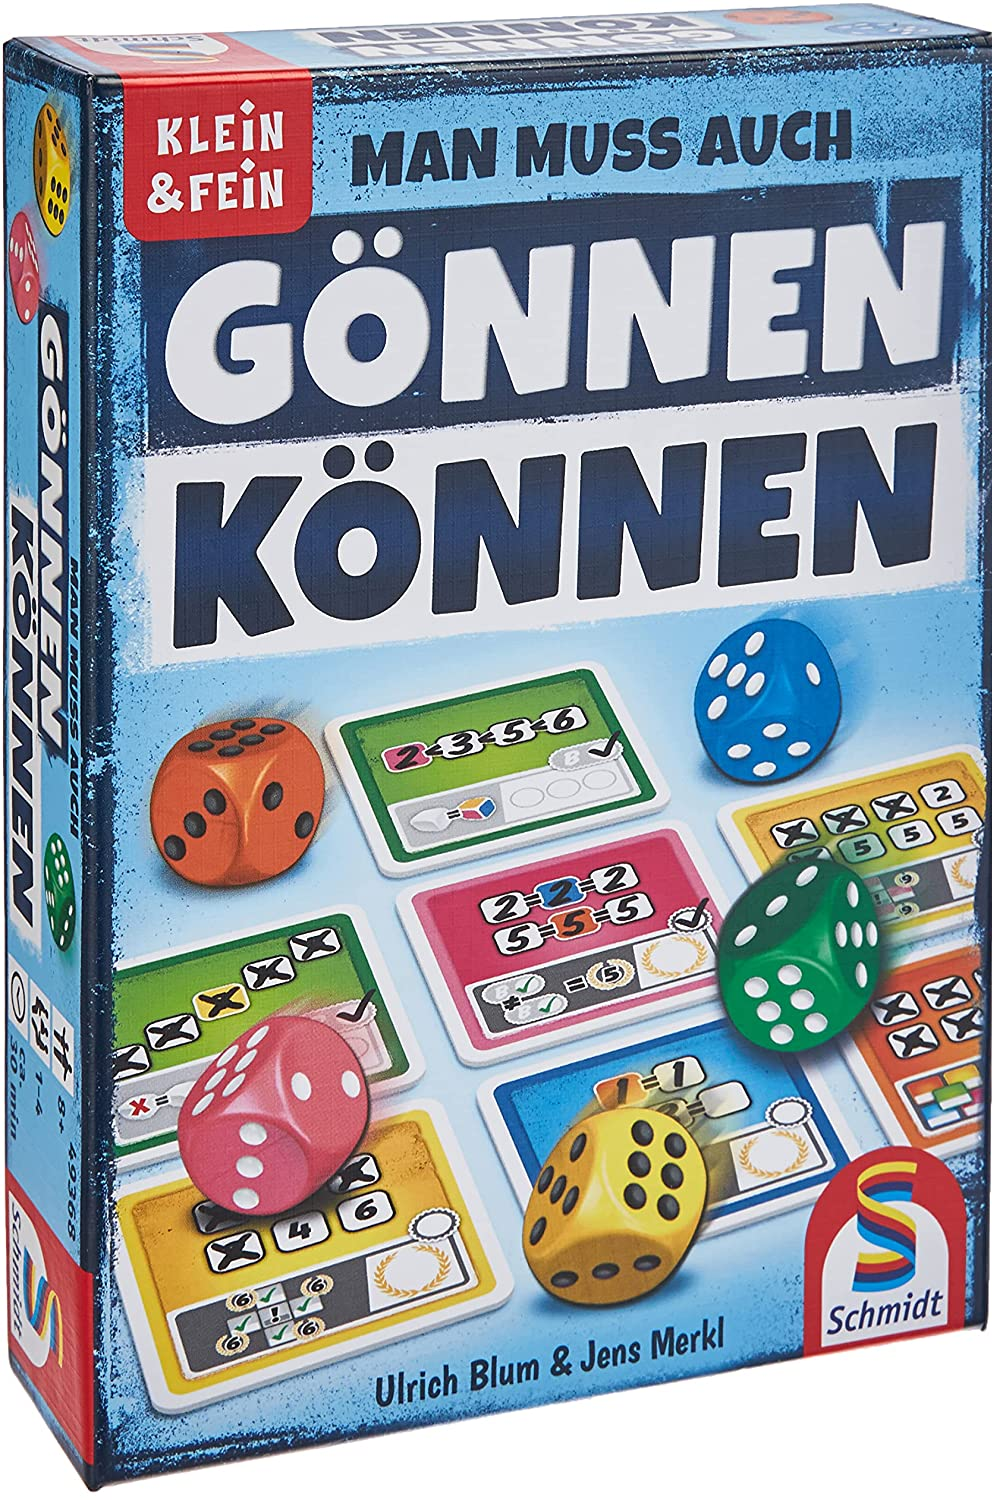 Würfelspiel aus der Serie Klein & Fein, bunt Schmidt Spiele 49368 Gönnen können